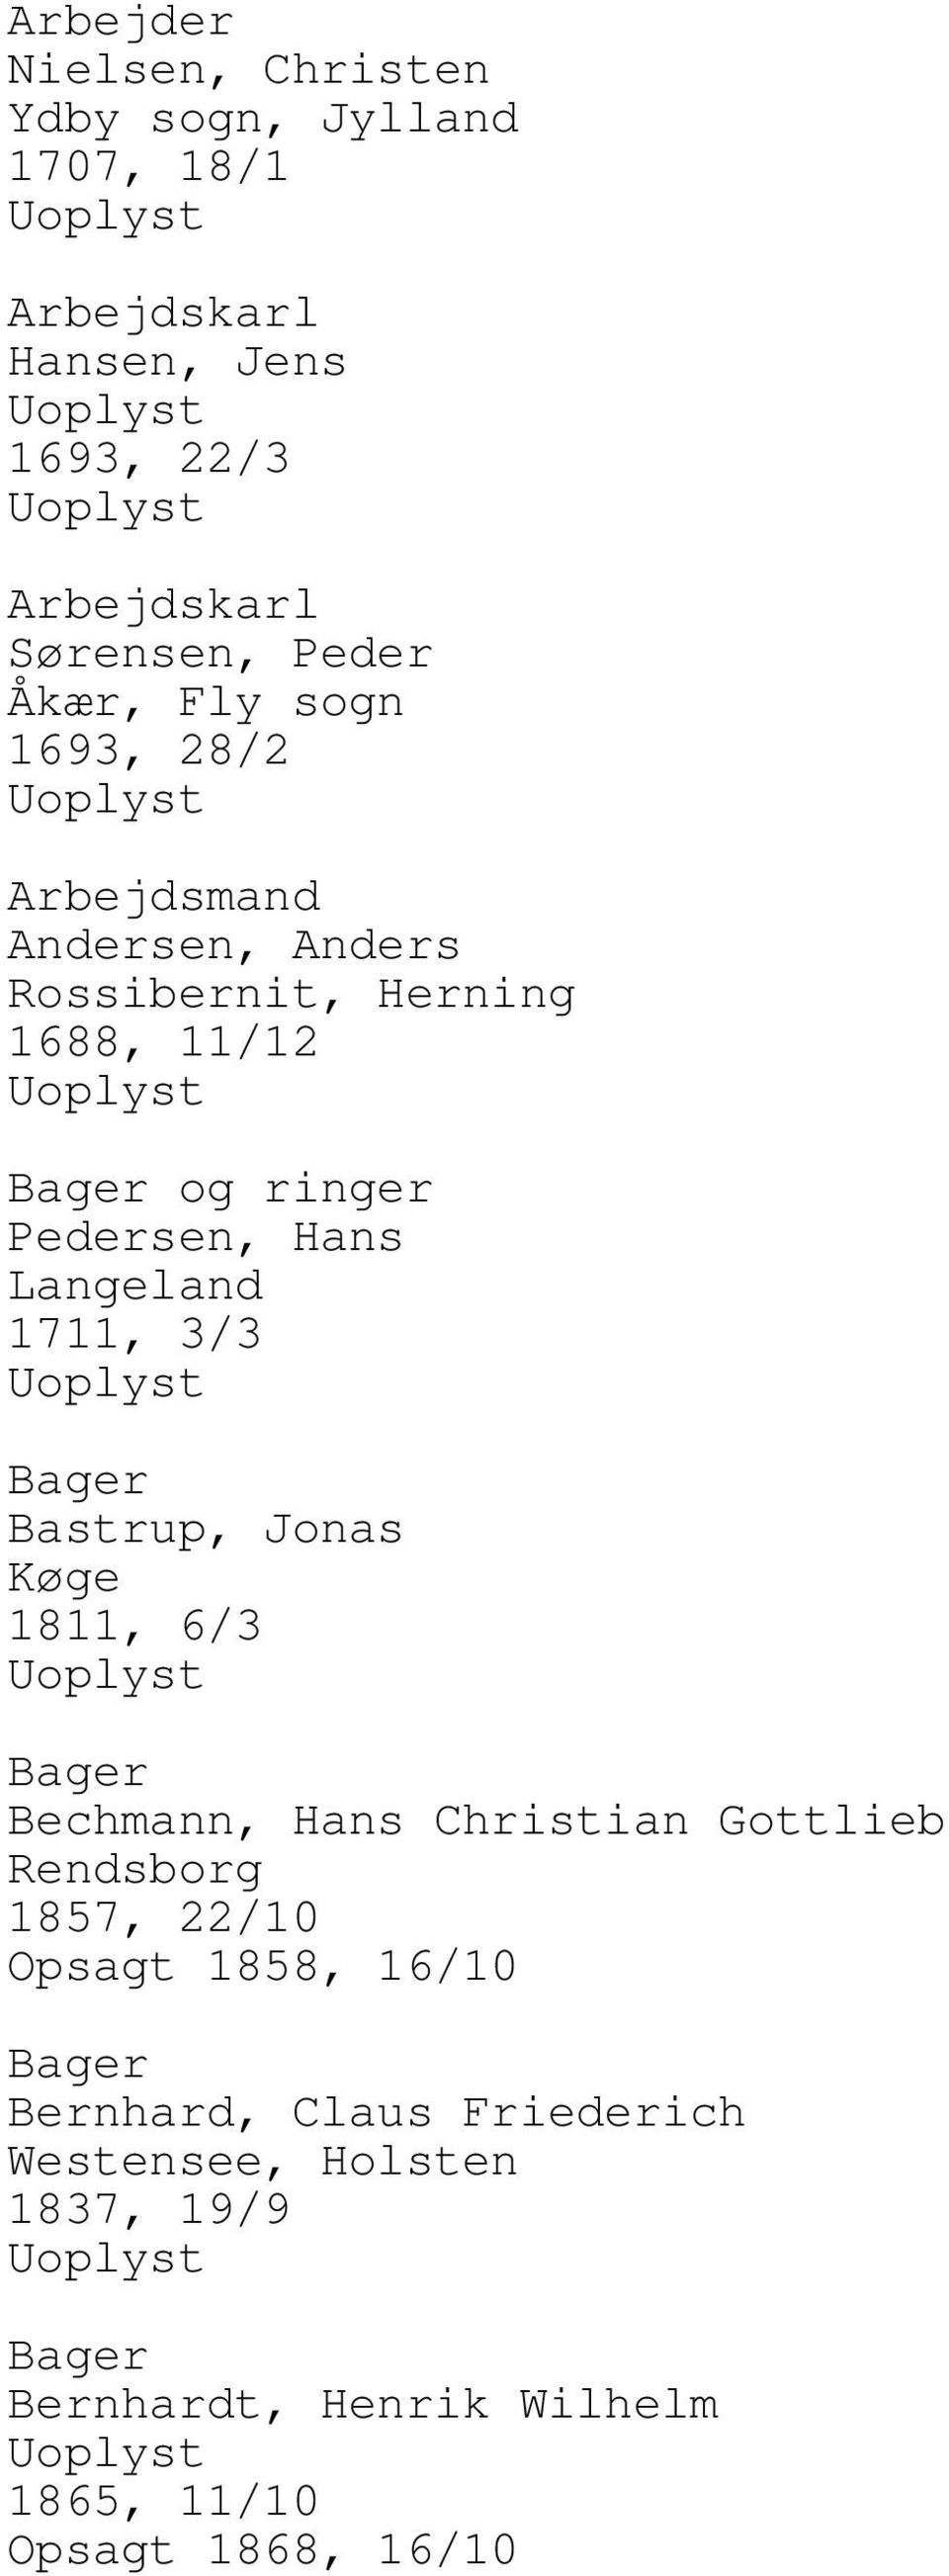 Langeland 1711, 3/3 Bager Bastrup, Jonas 1811, 6/3 Bager Bechmann, Hans Christian Gottlieb Rendsborg 1857, 22/10 Opsagt